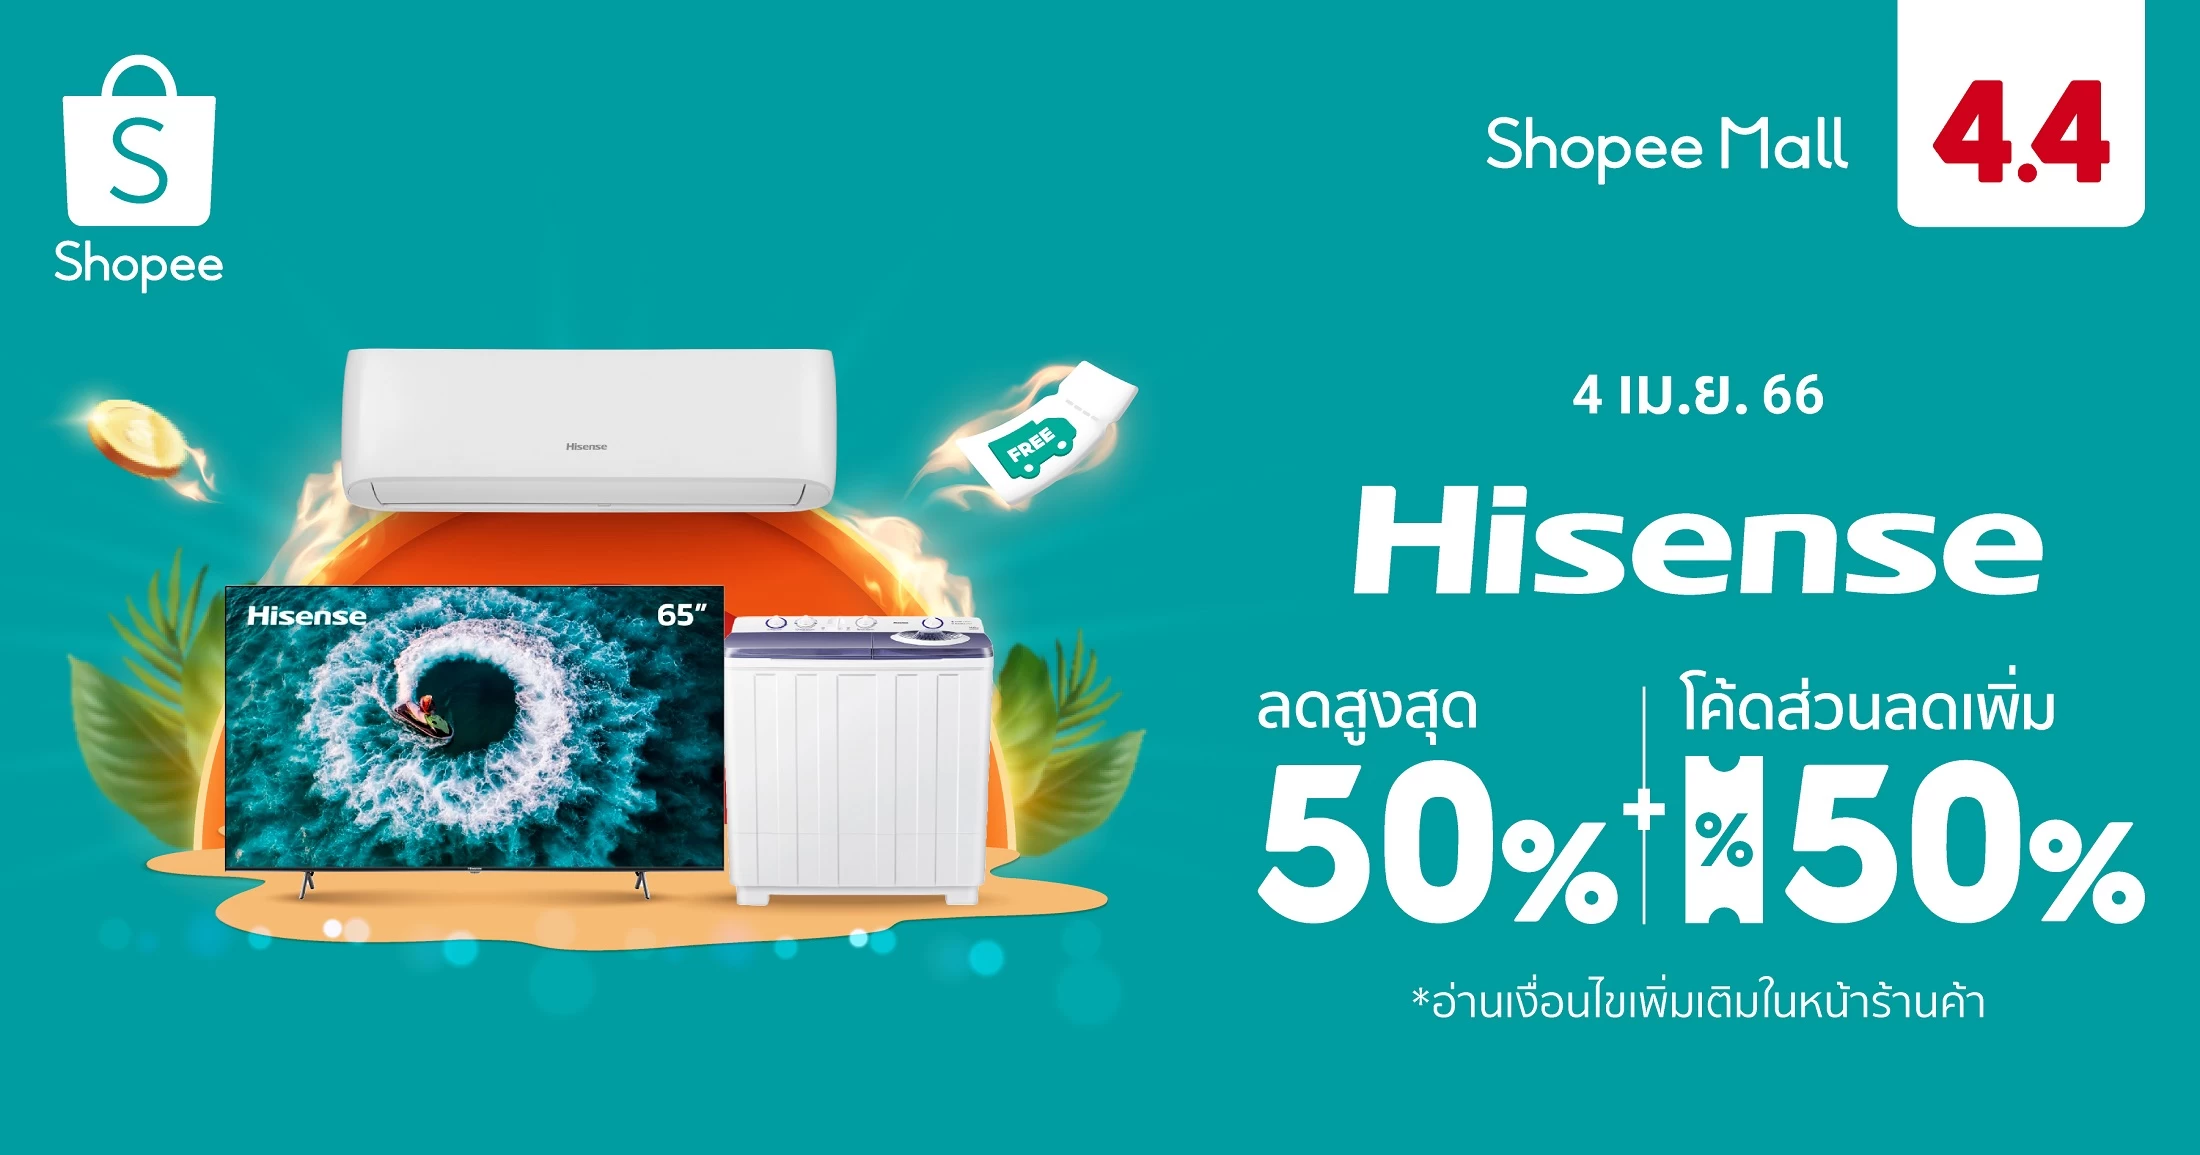 Hisense x Shopee 4.4 PR KV | hisense | ไฮเซ่นส์ ย้ำภาพผู้นำสมาร์ททีวี ประเดิมไตรมาส 2 ในแคมเปญรับสงกรานต์ ‘Shopee 4.4 ลด ร้อน แรง’